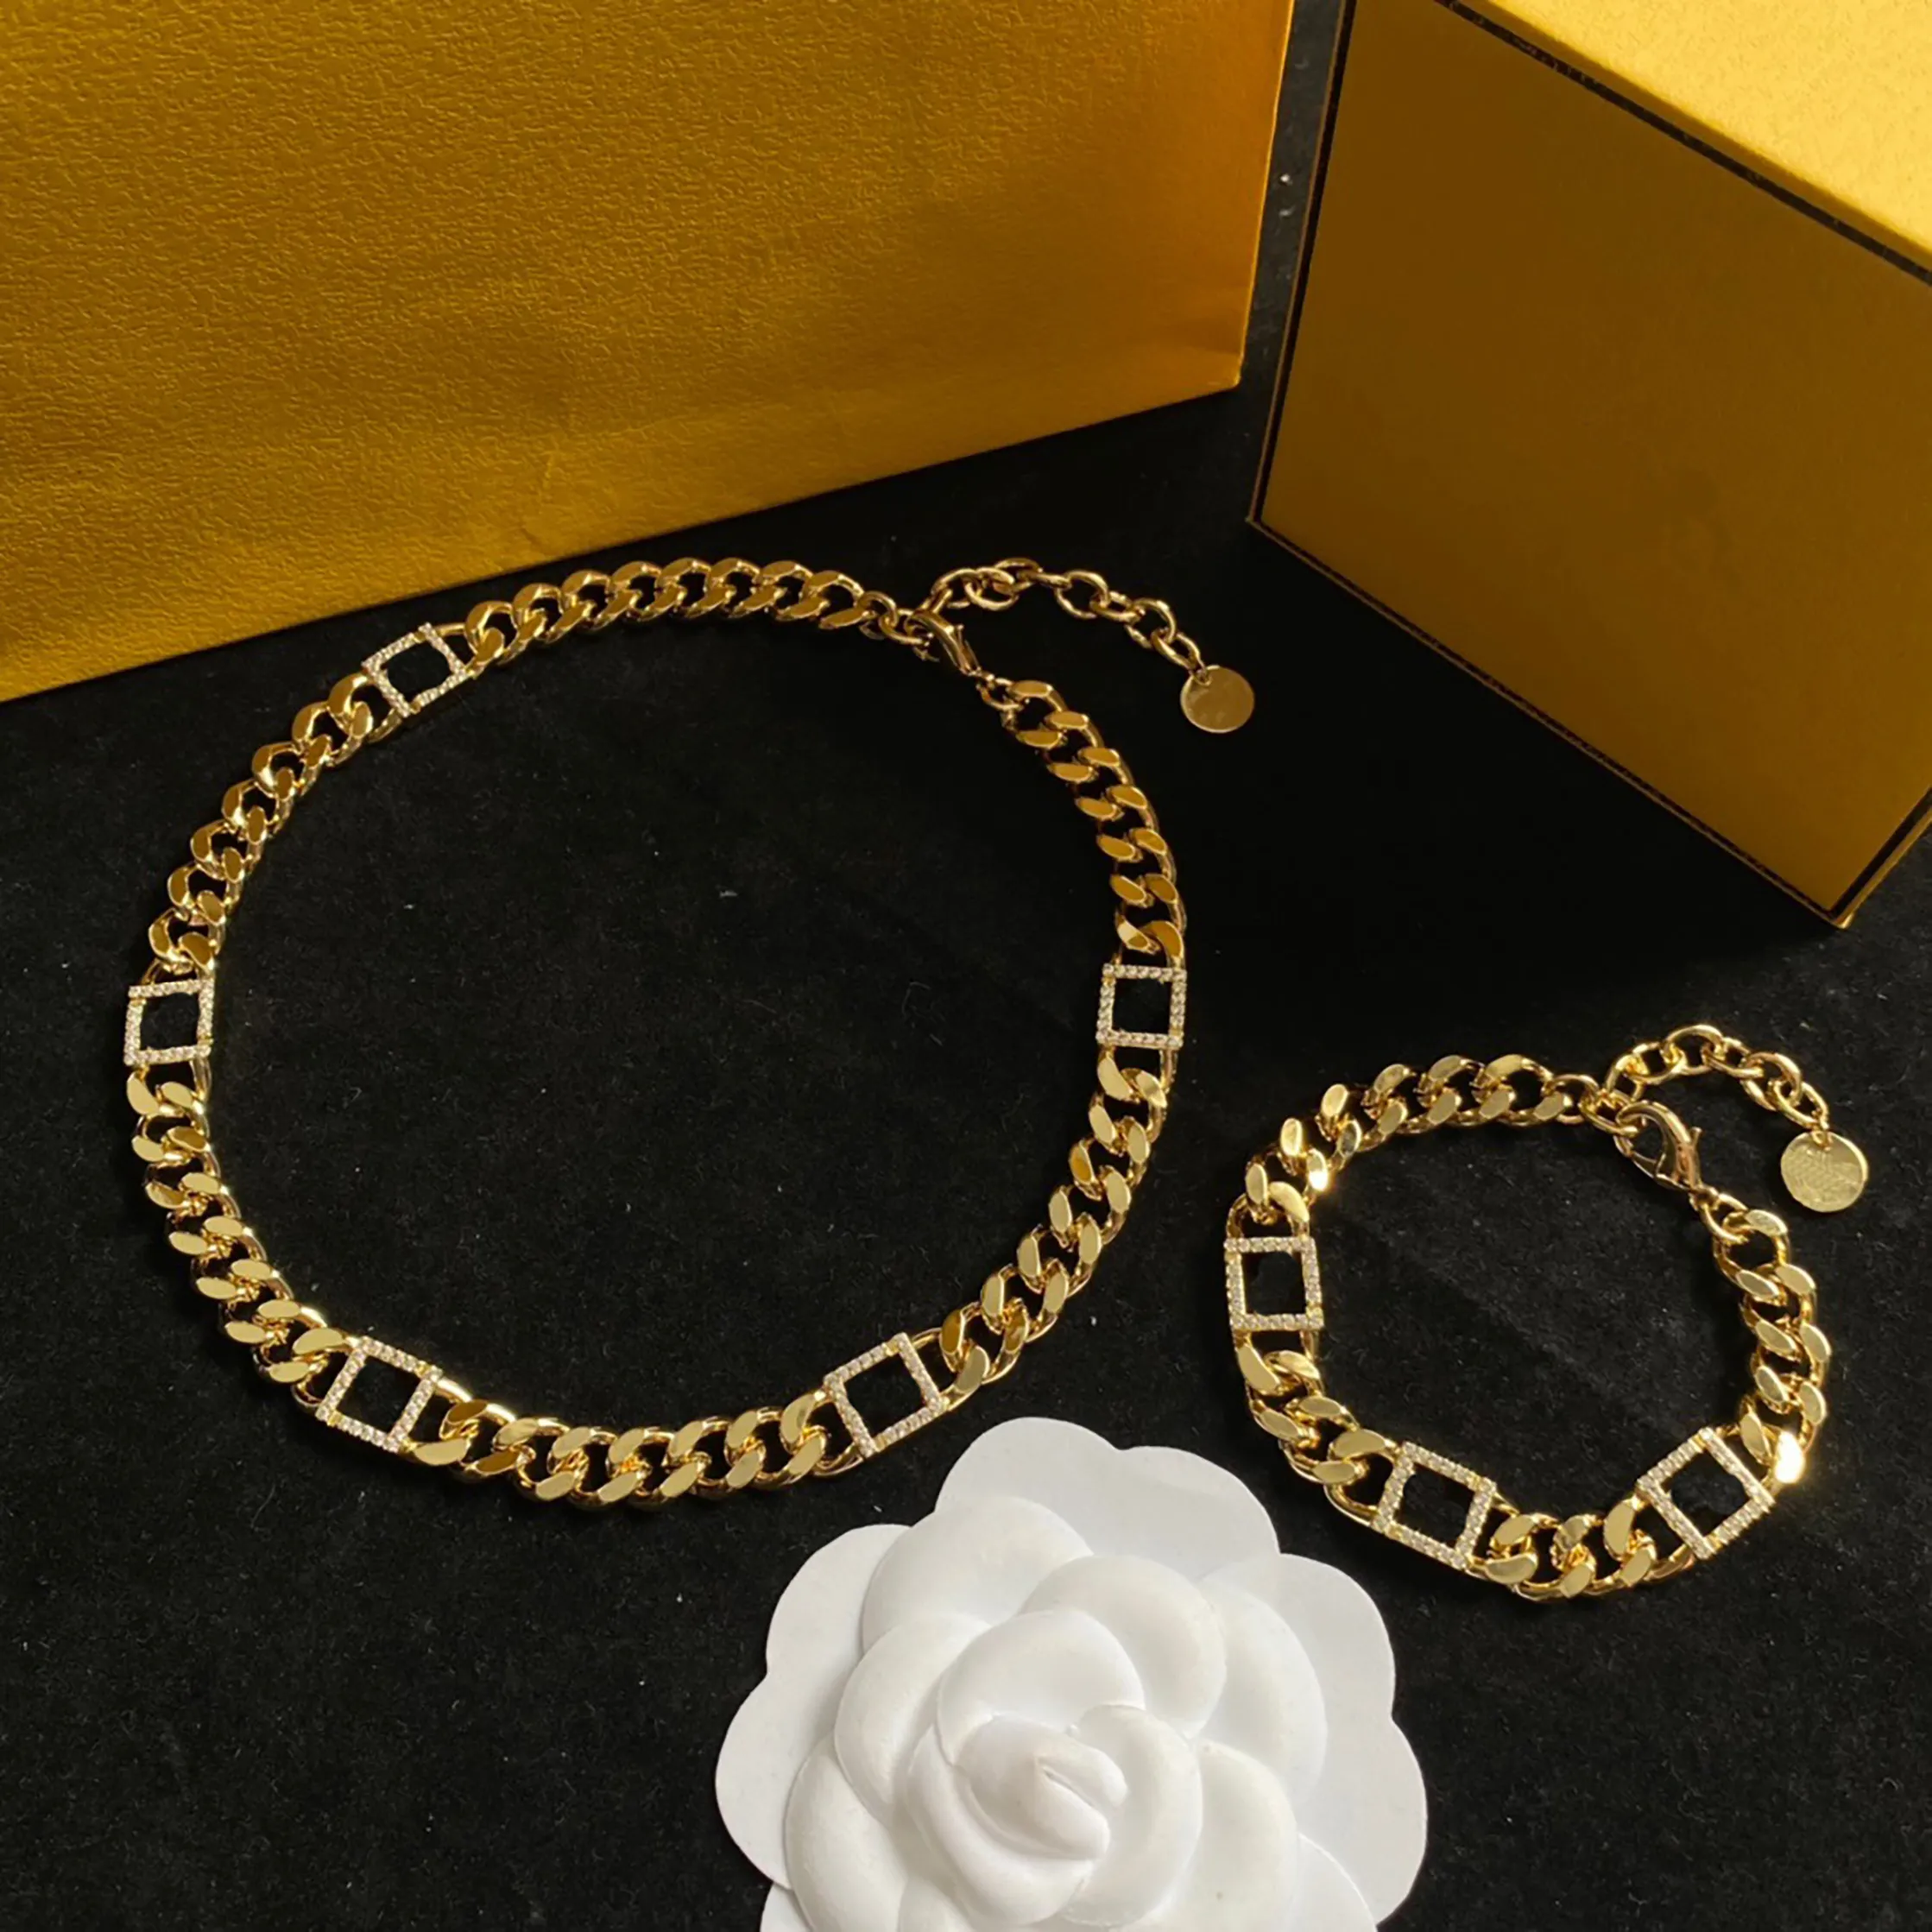 عالية الجودة مصمم القلائد للنساء رسالة الماس الذهب الكوبي سلسلة ربط للرجال هدايا لصديقة الهيب هوب المجوهرات